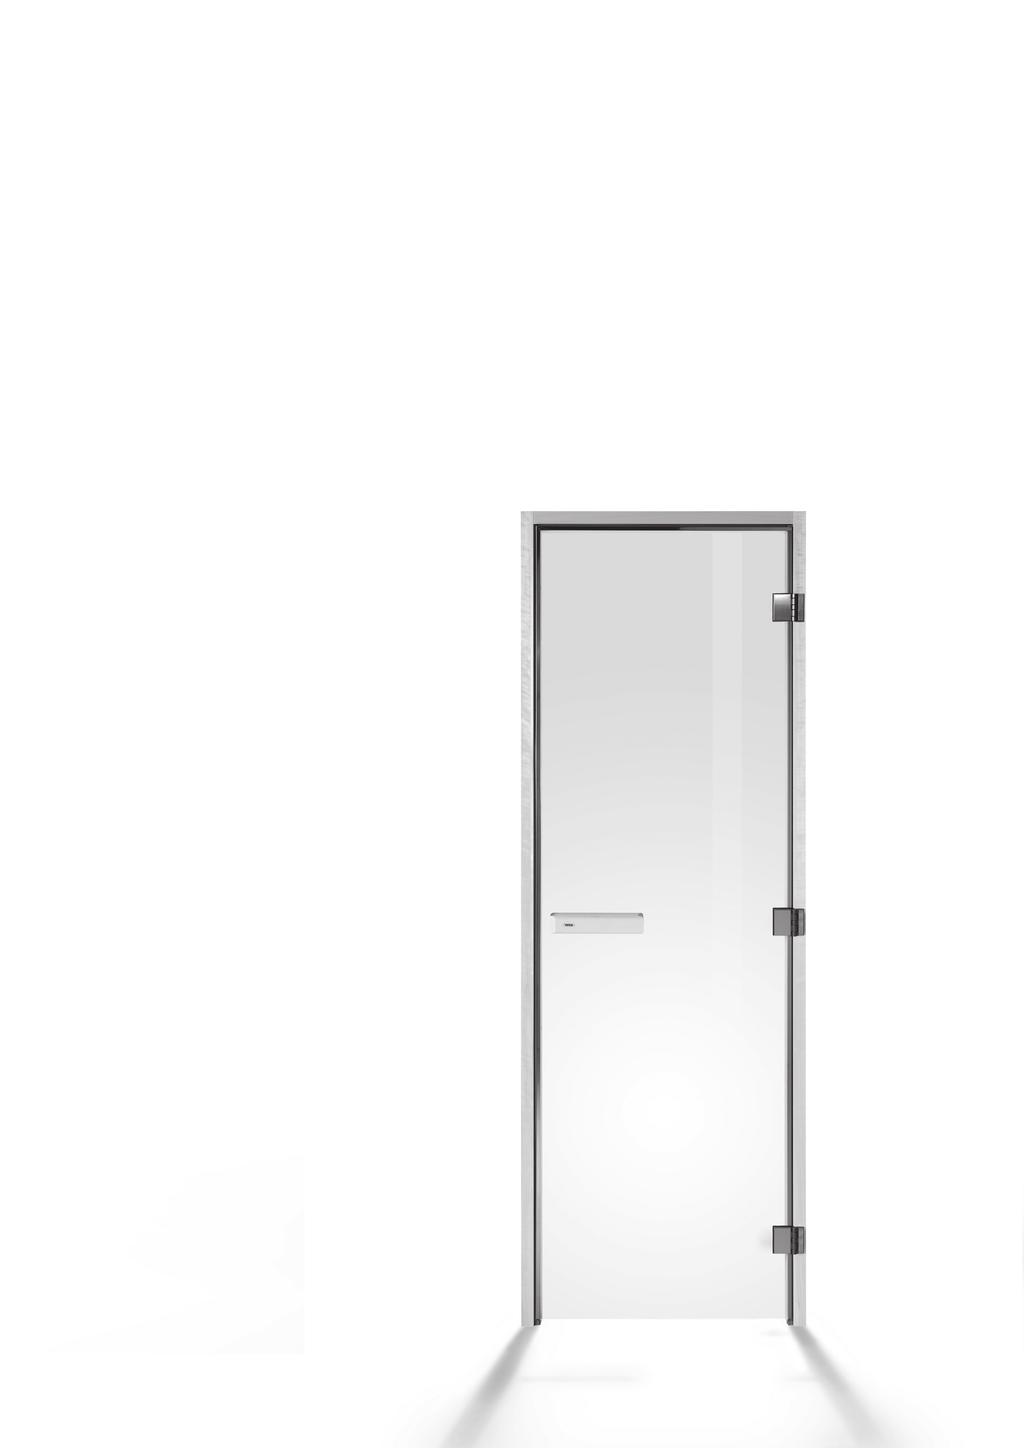 Sauna doors +44 (0)1428